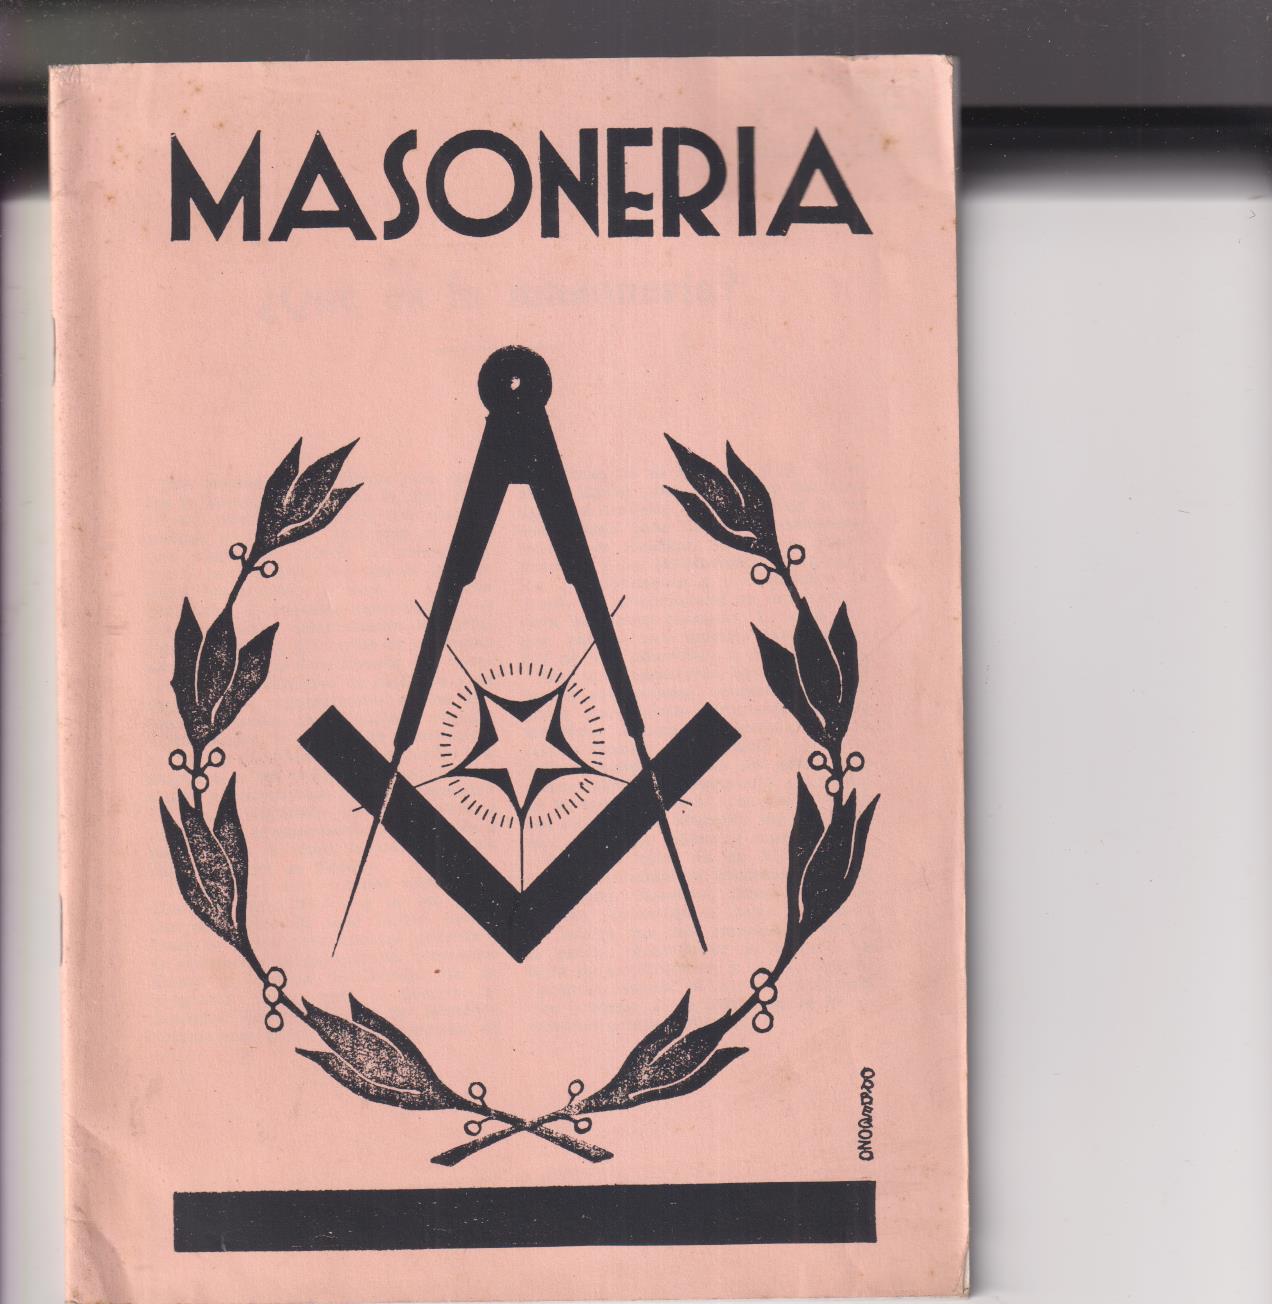 Masonería. Origen Judío de los masones. Editorial Ibérica. Probable Reedición posterior